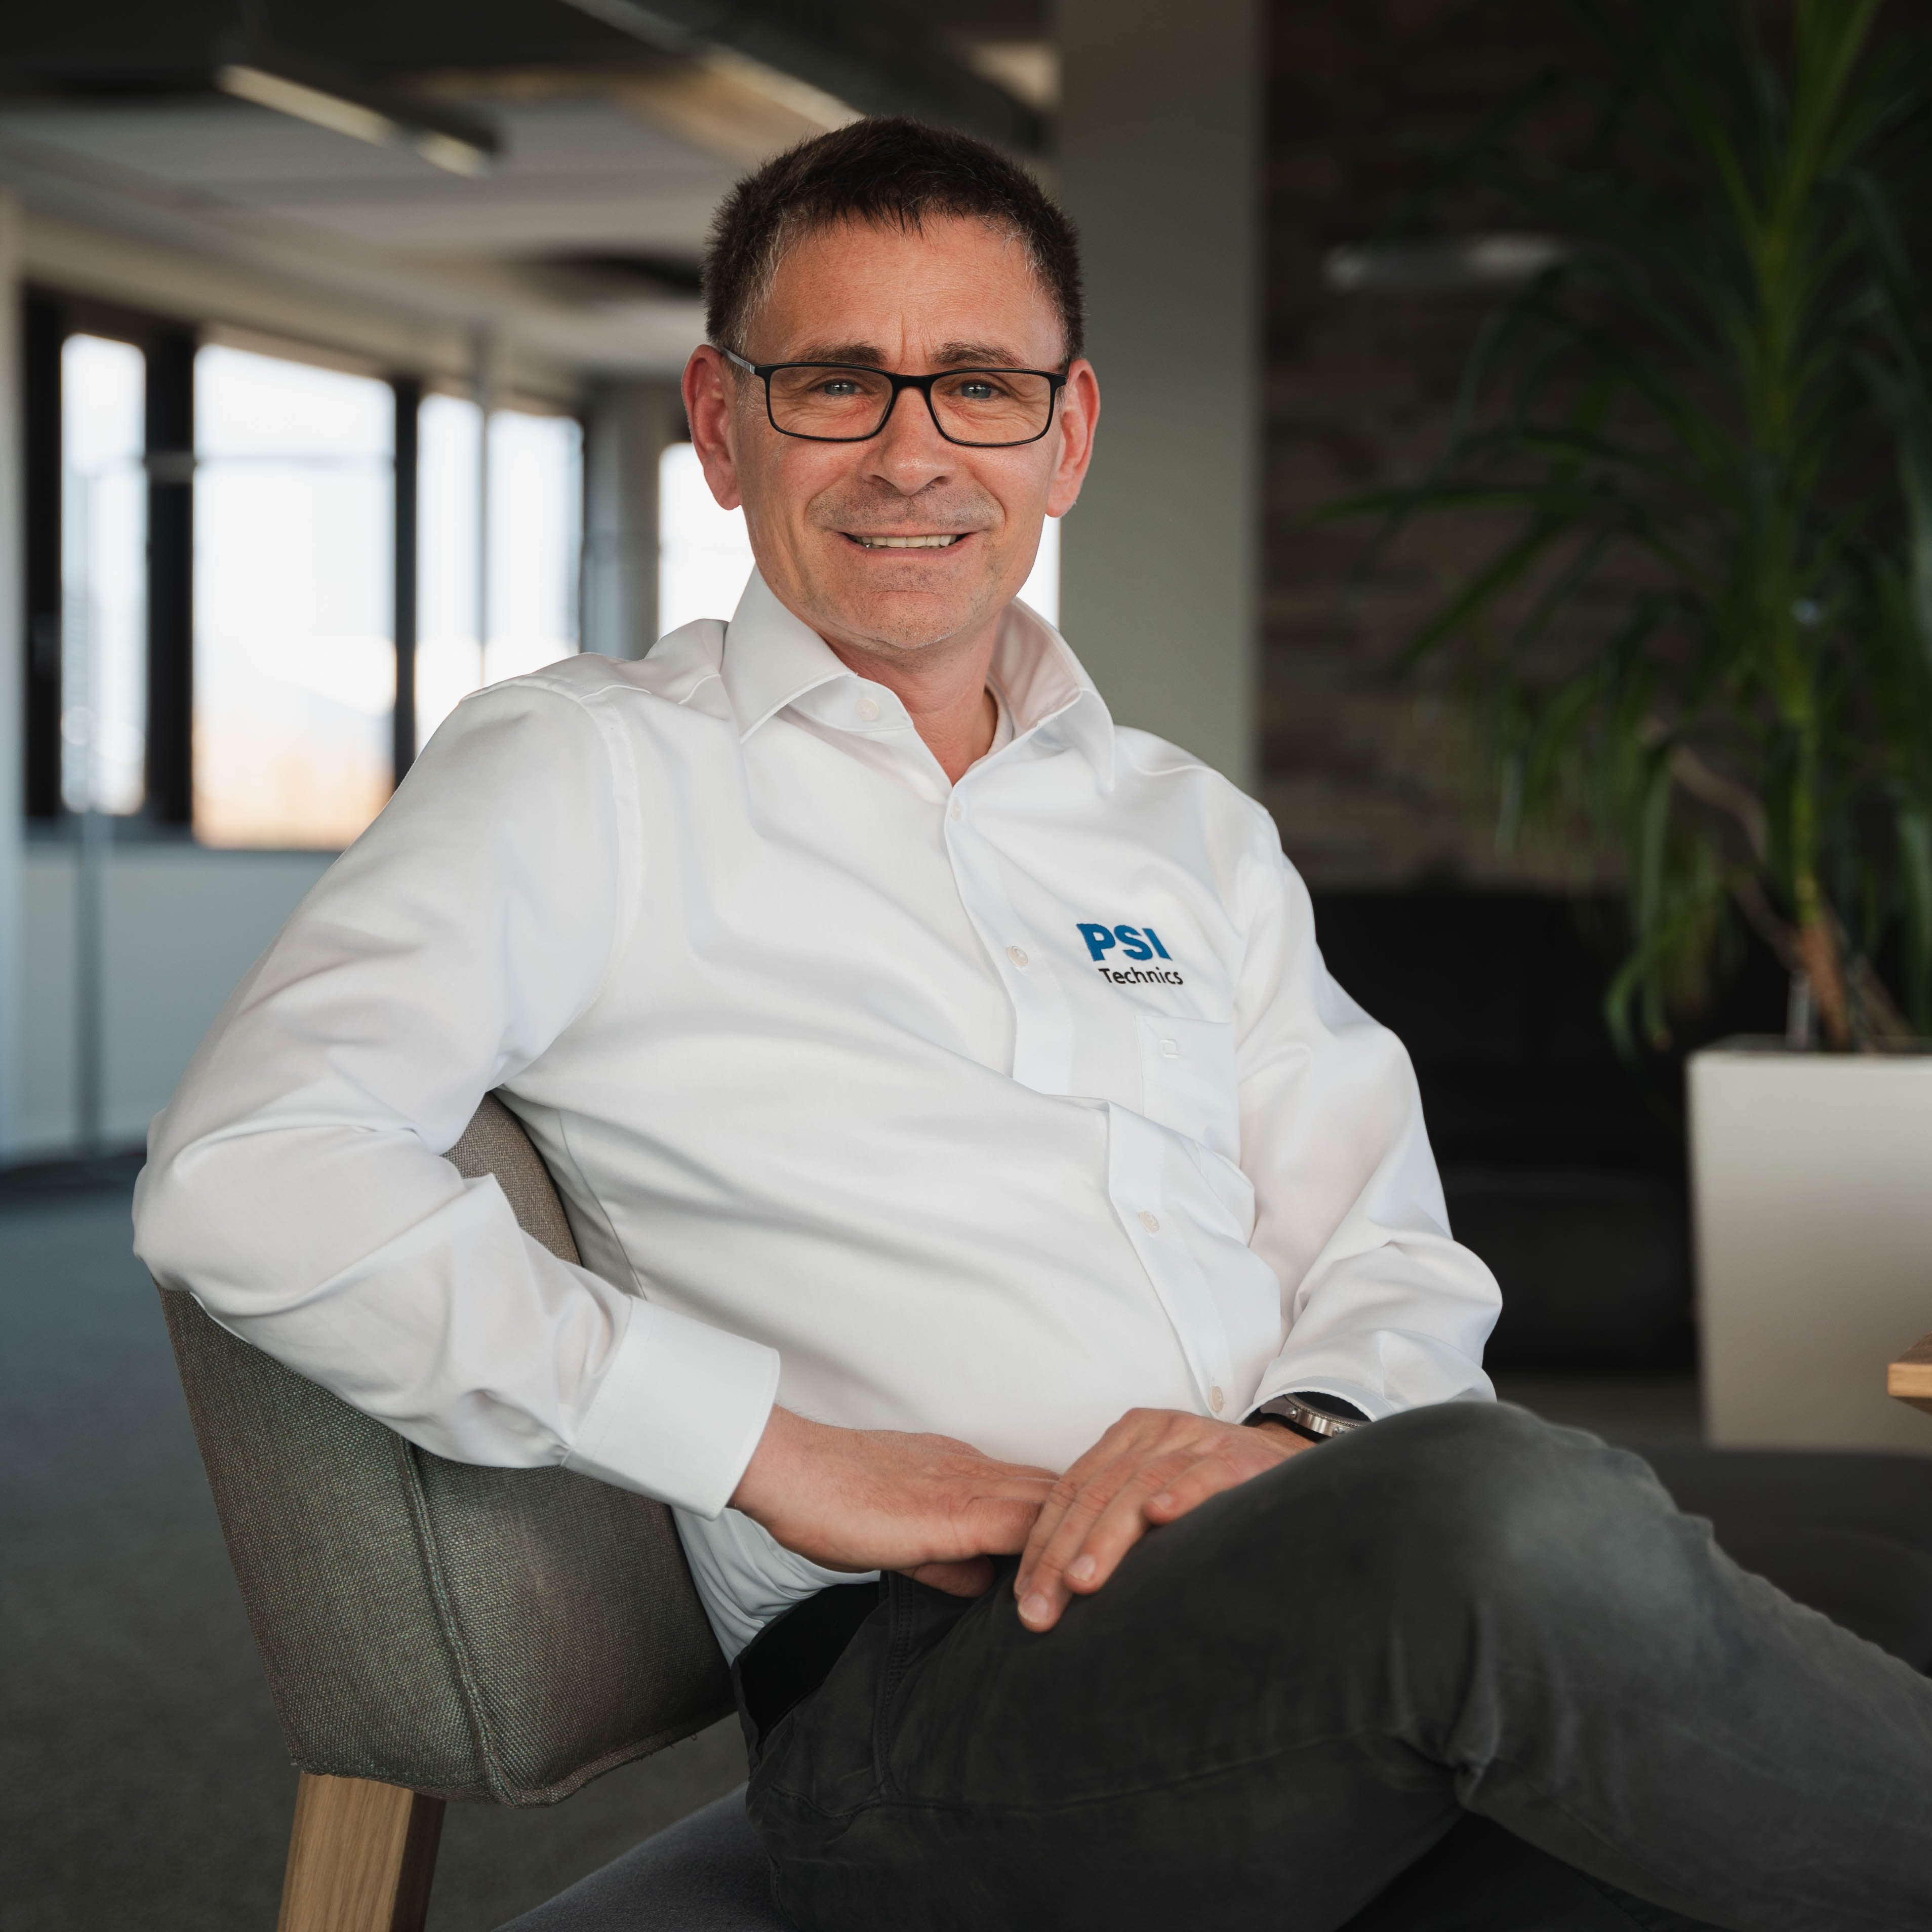 Karl-Heinz Förderer, Firmengründer und Geschäftsführer der PSI Technics GmbH